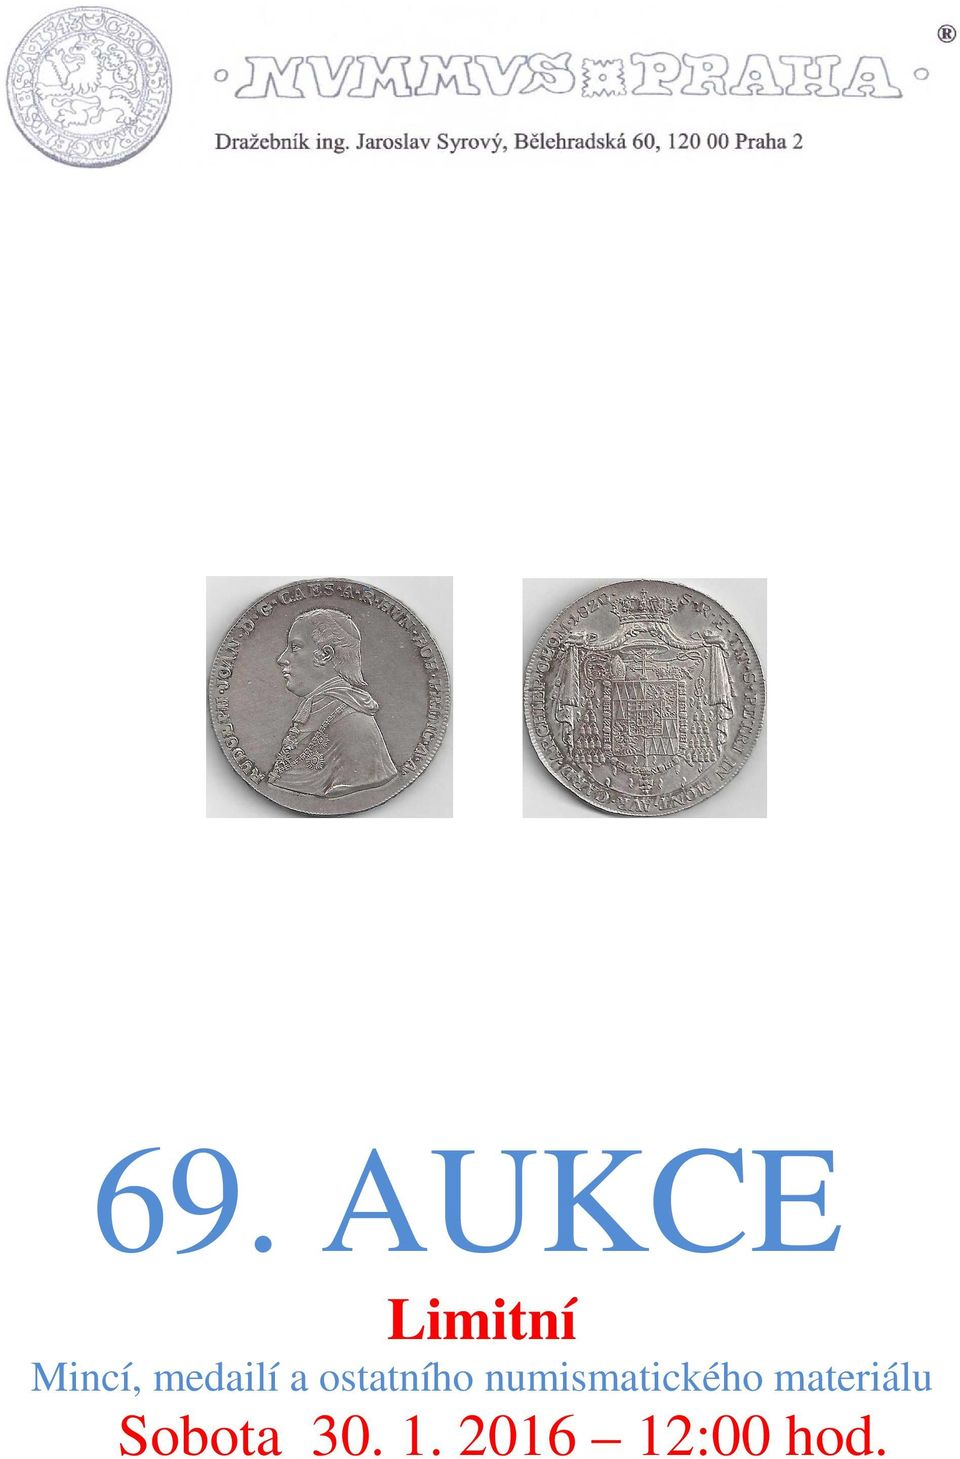 numismatického materiálu